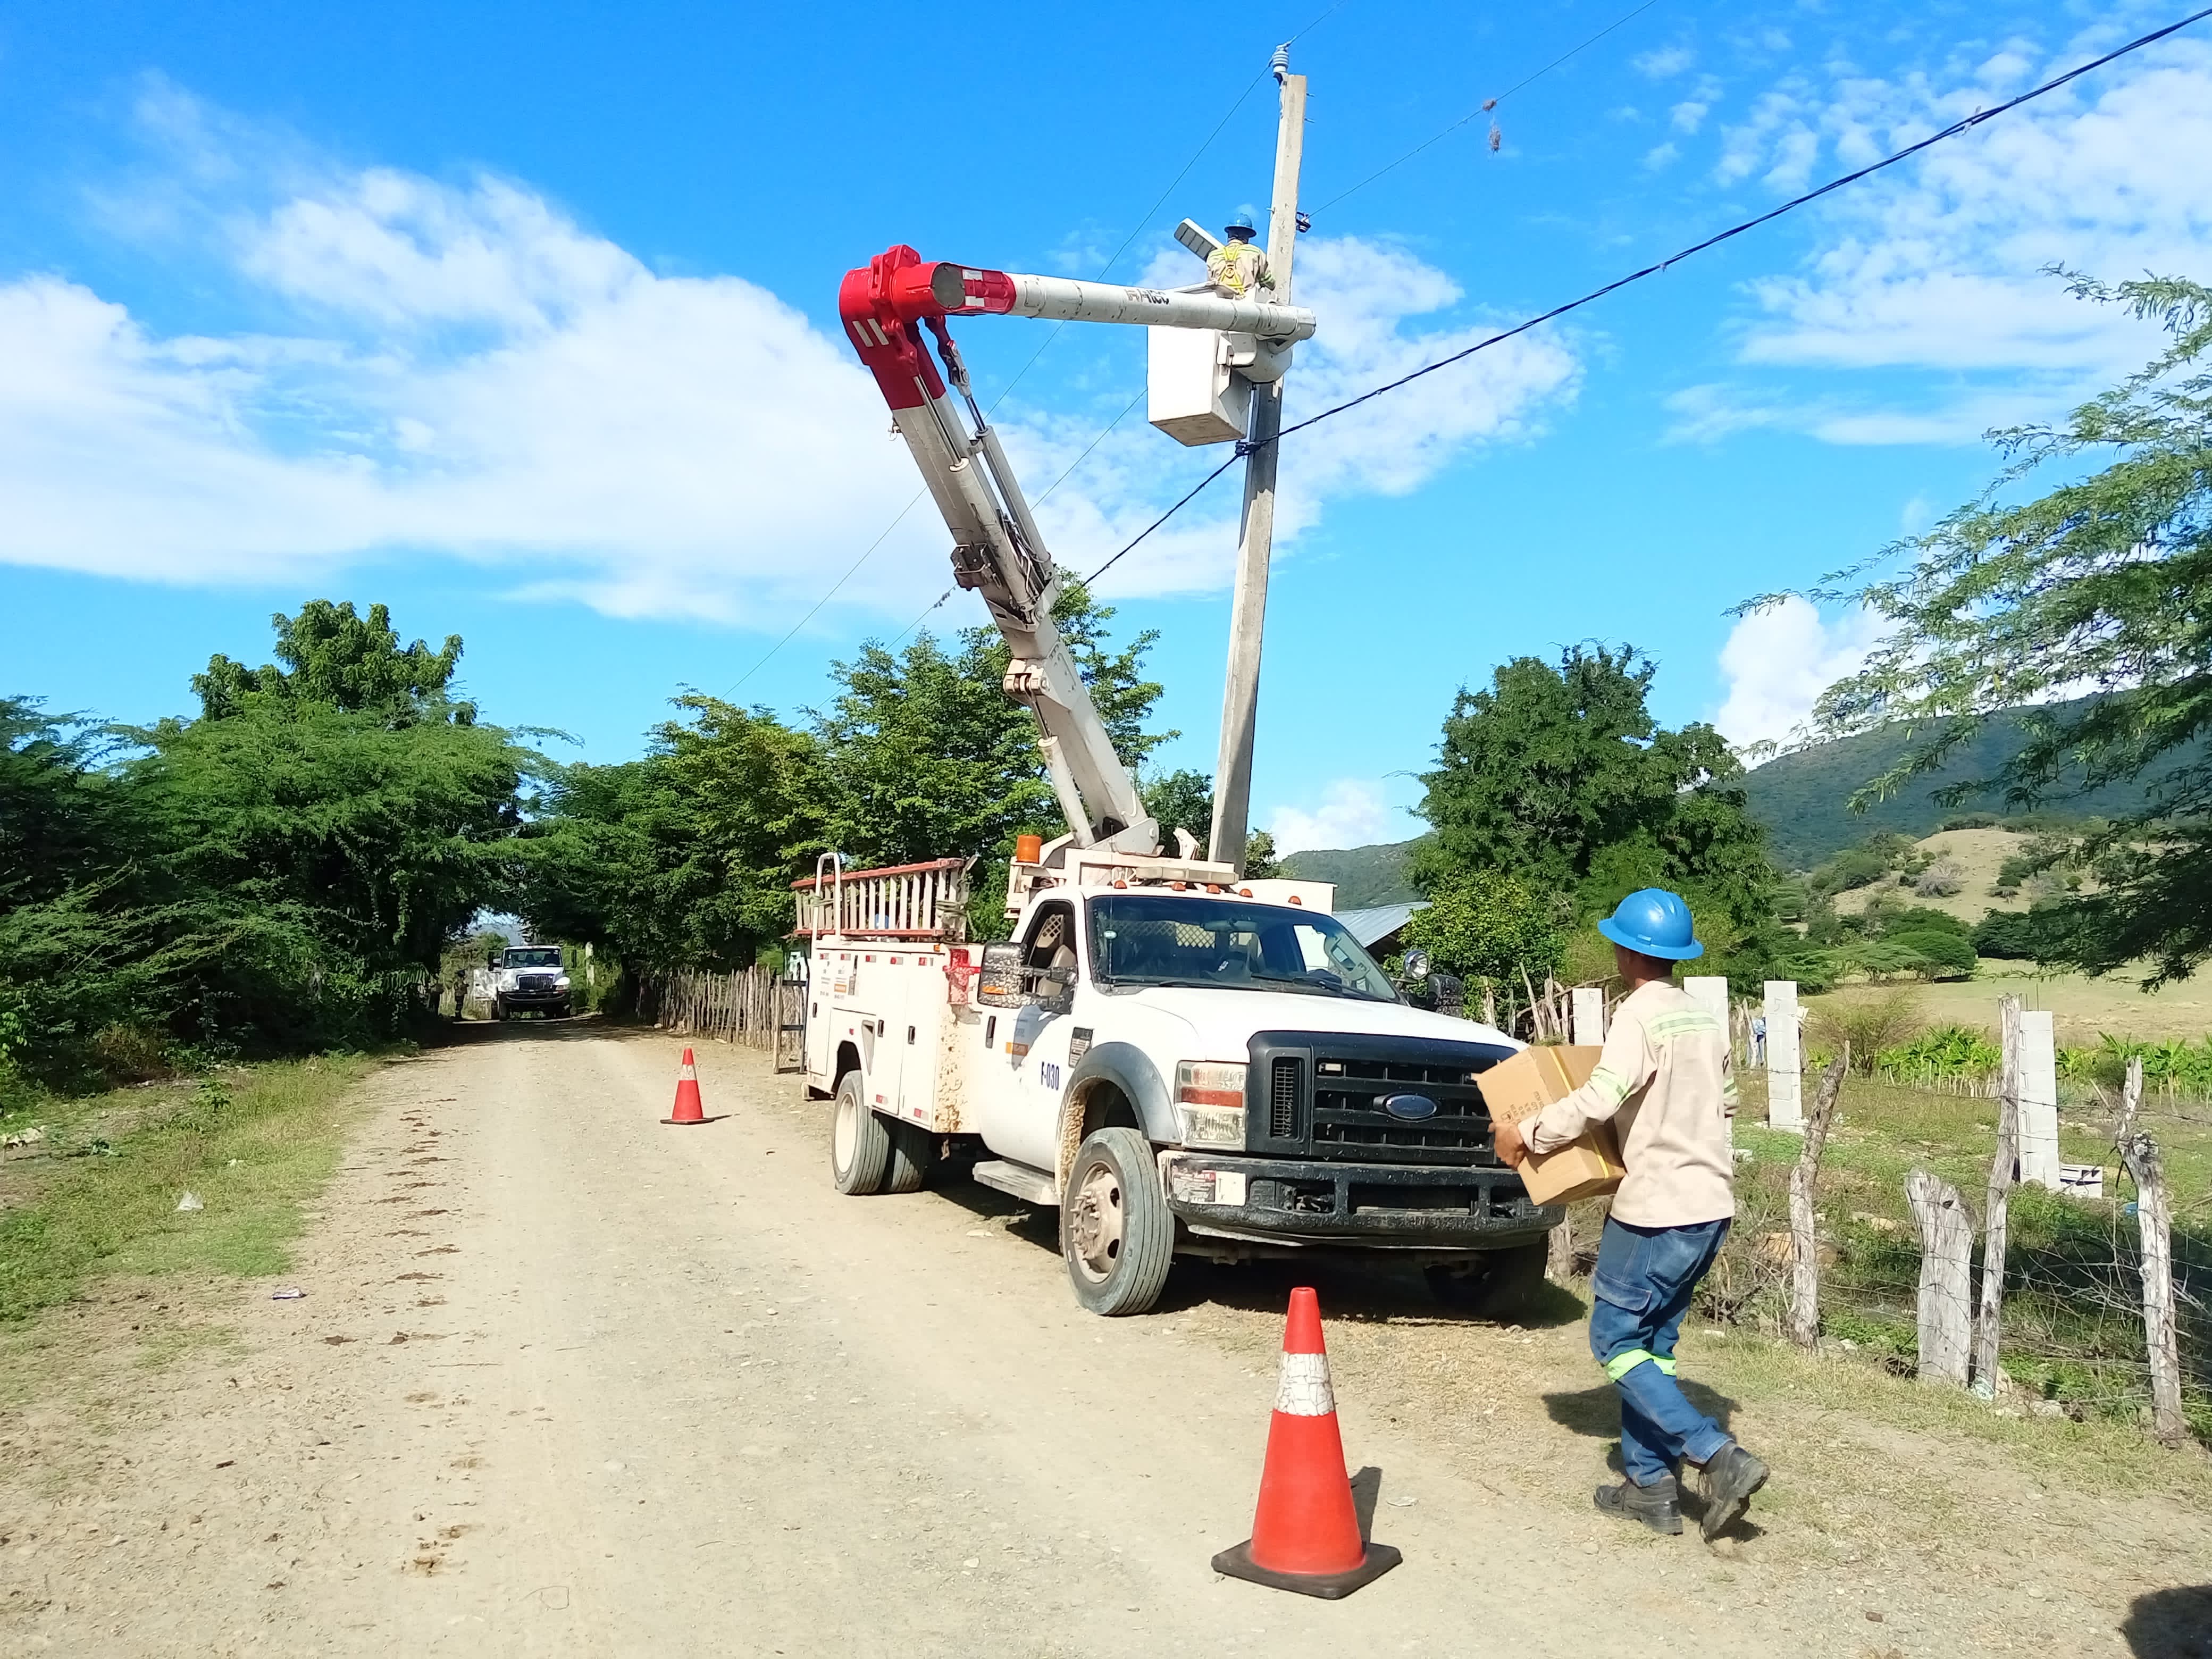 REPÚBLICA DOMINICANA: Edesur instala casi 500 nuevas luminarias tipo led en barrios y comunidades de San Juan